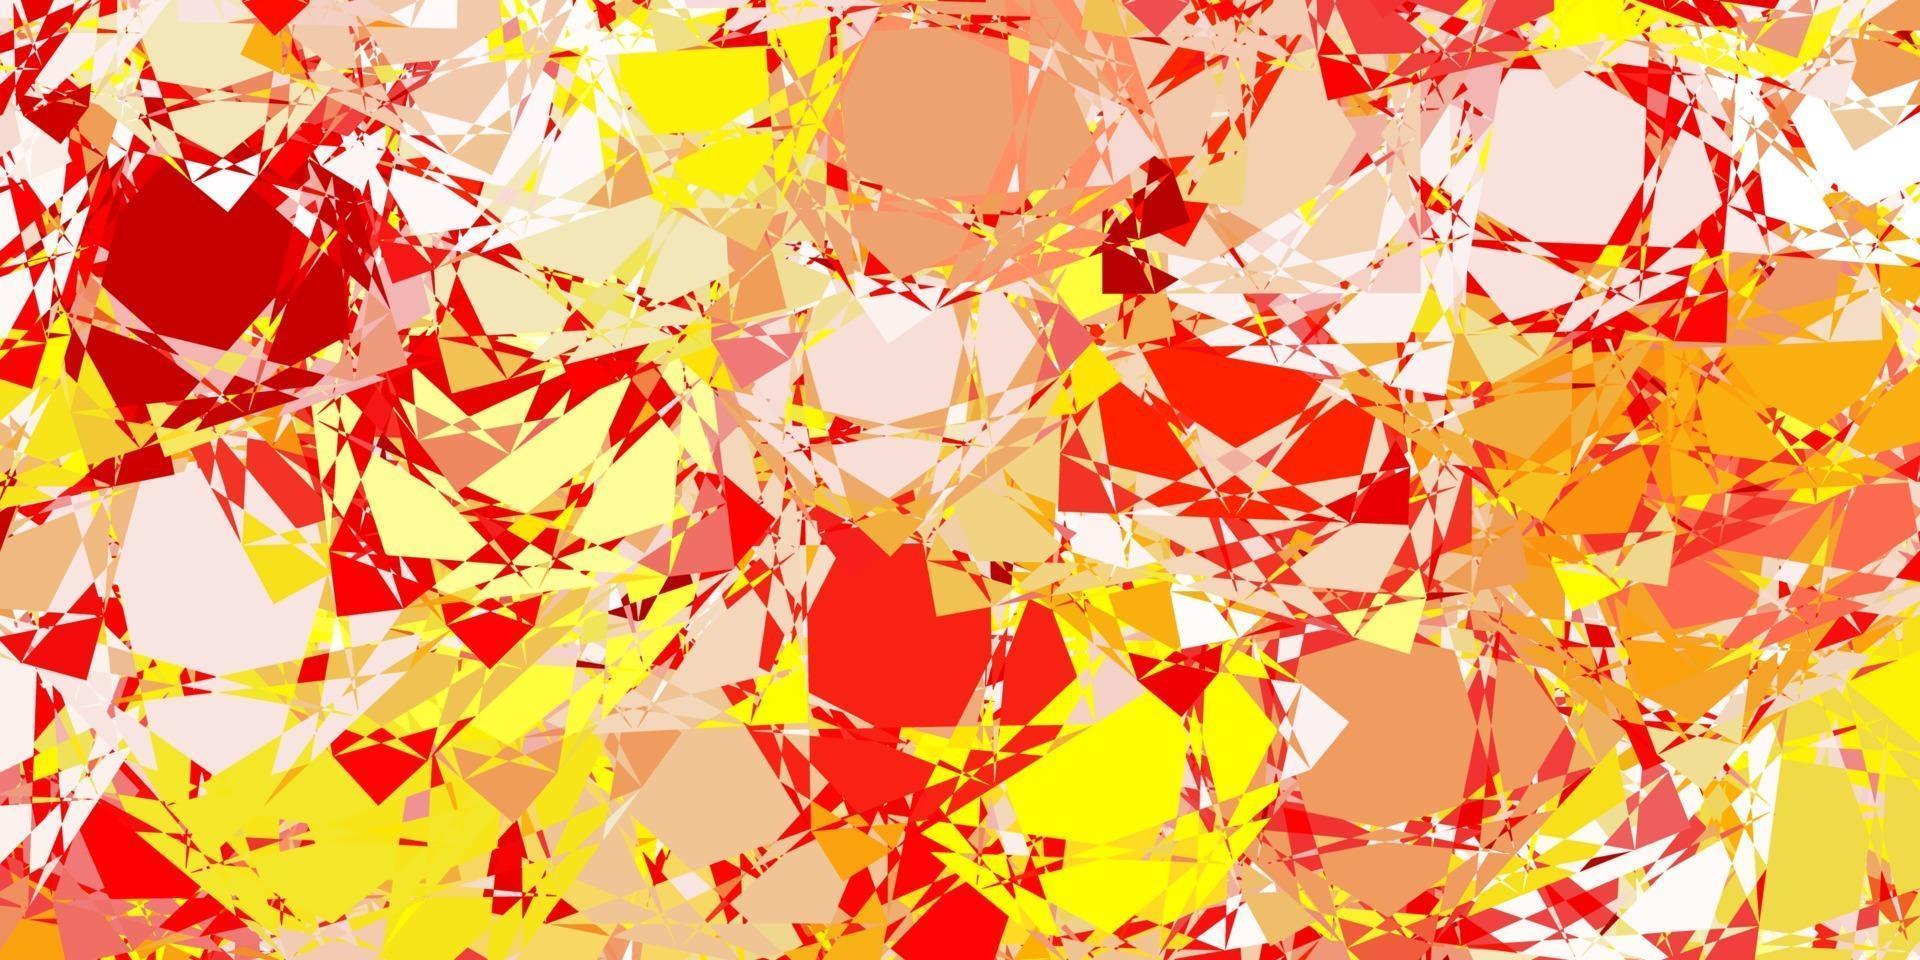 sfondo vettoriale rosso chiaro, giallo con forme poligonali.